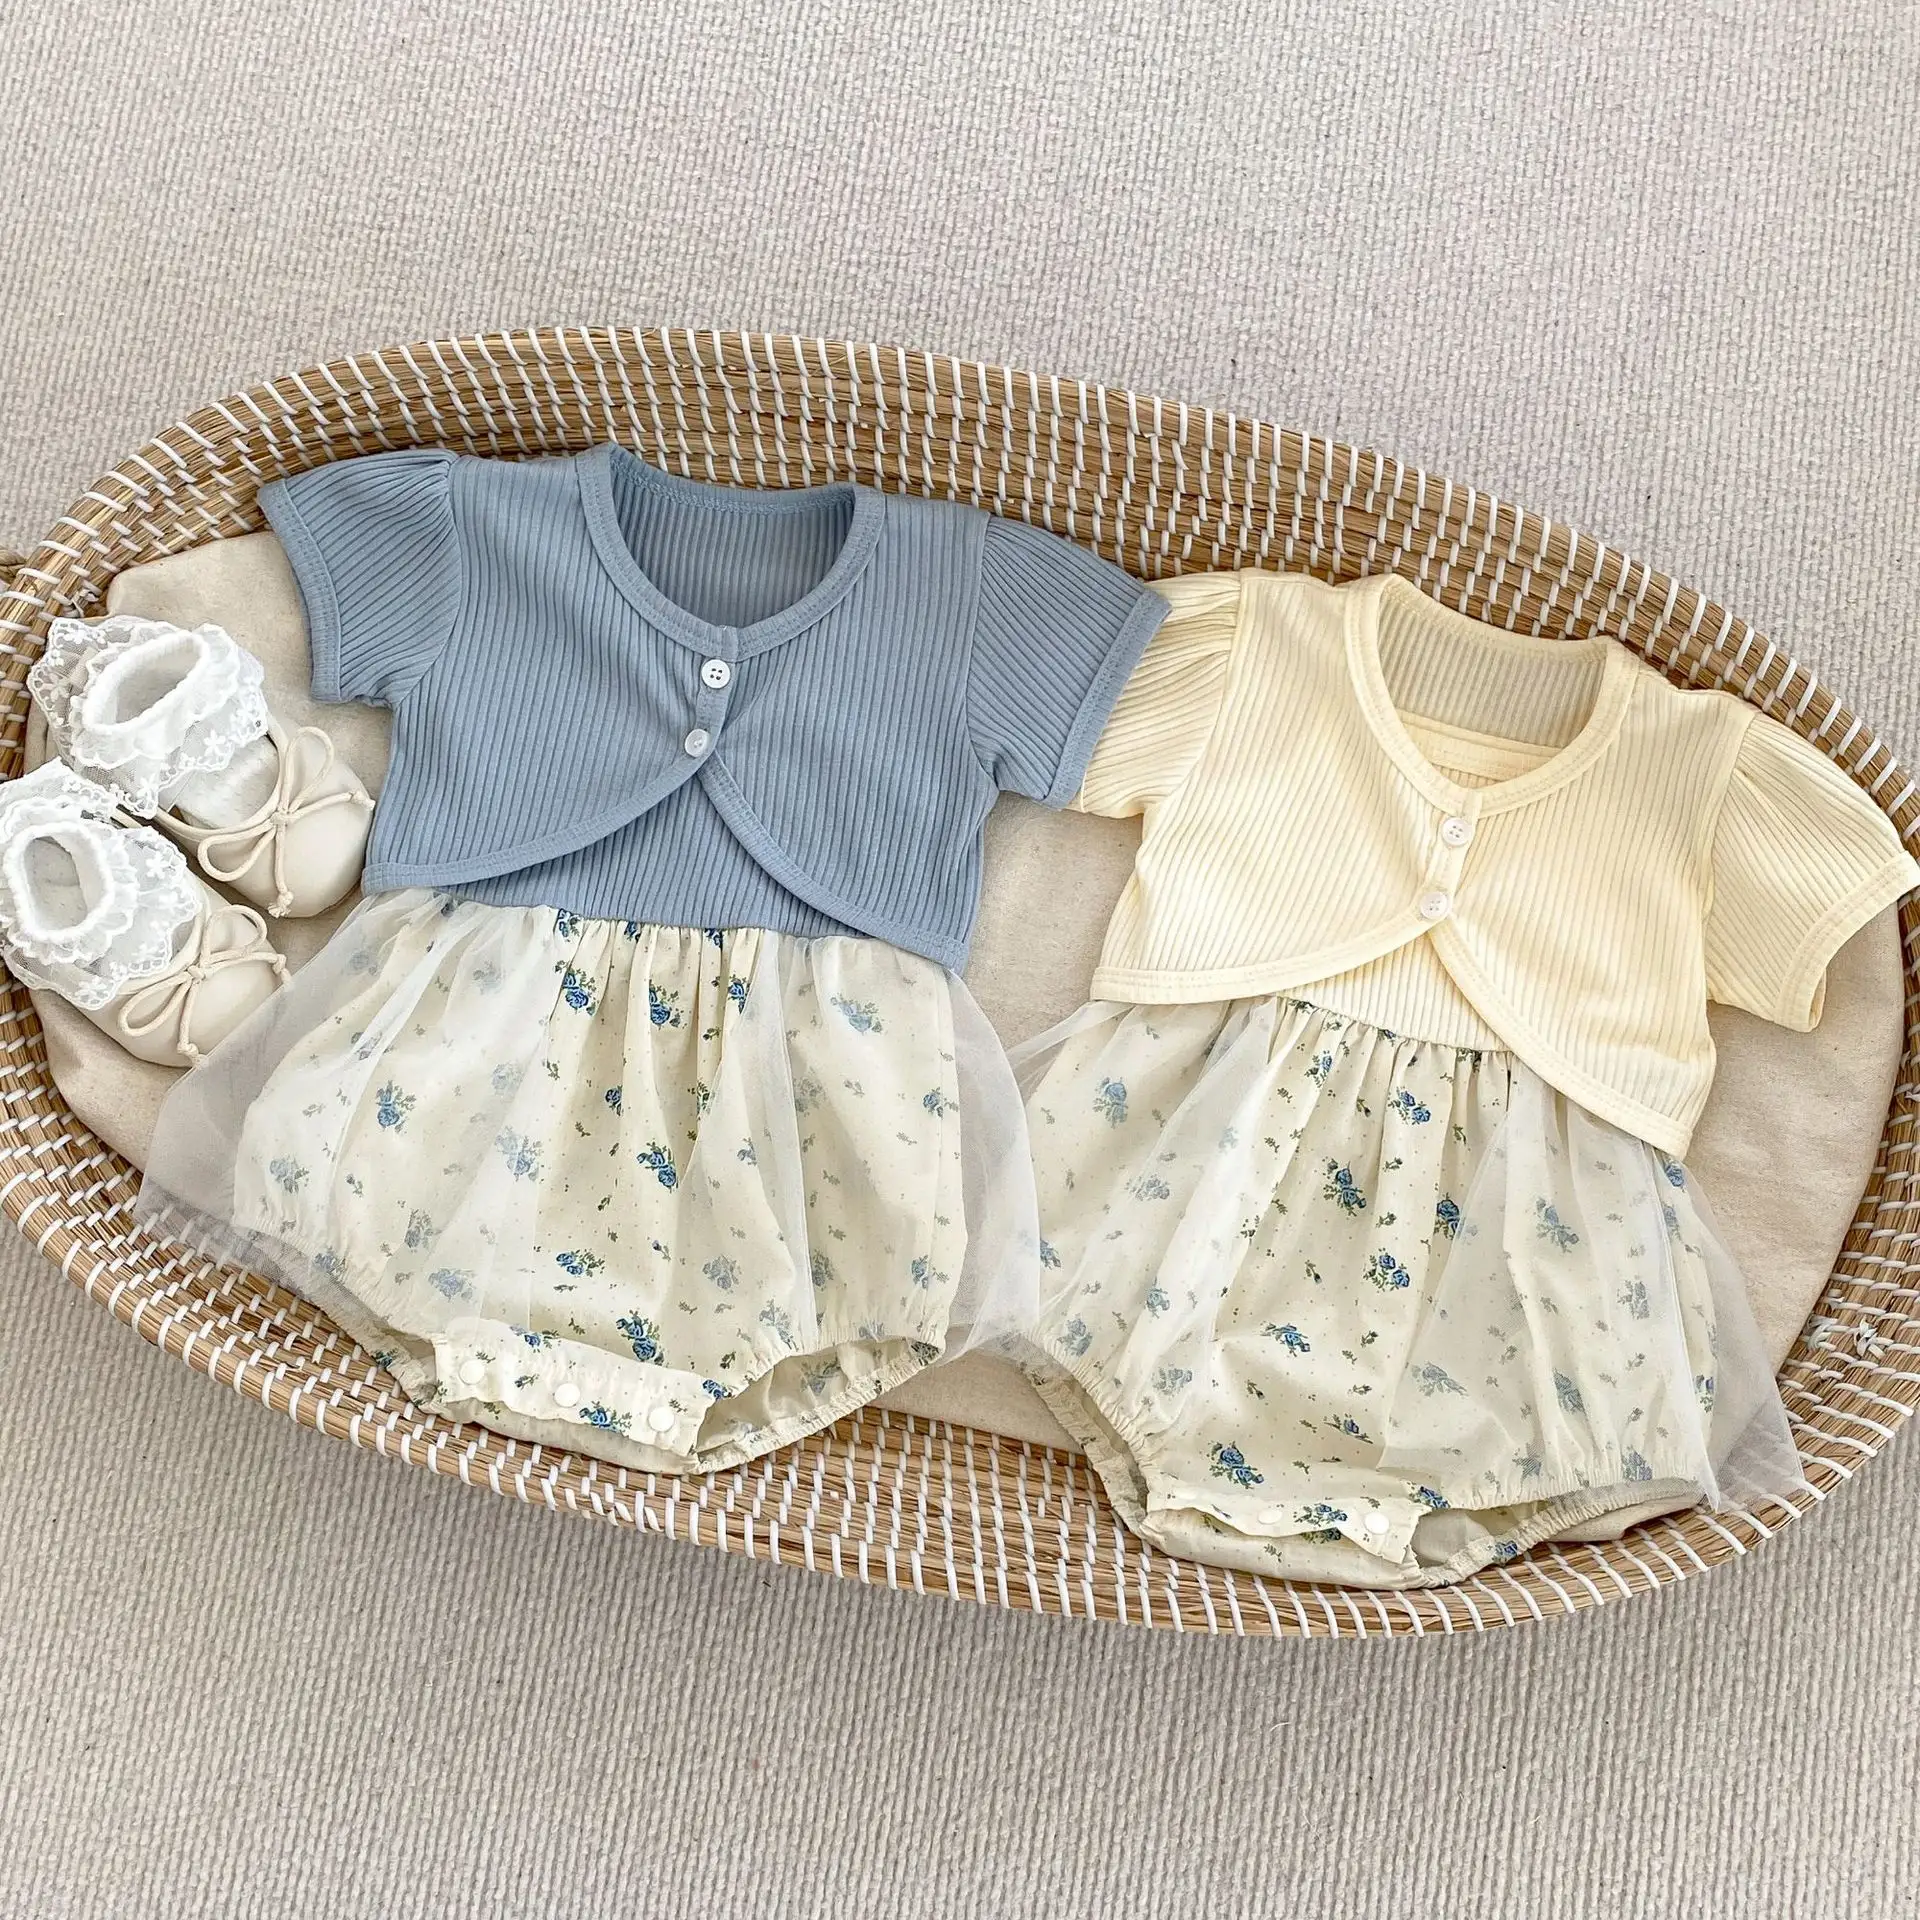 Verano bebé niña floral Sling Vestido de bebé fino bebé malla onesie mameluco + chaqueta desmontable